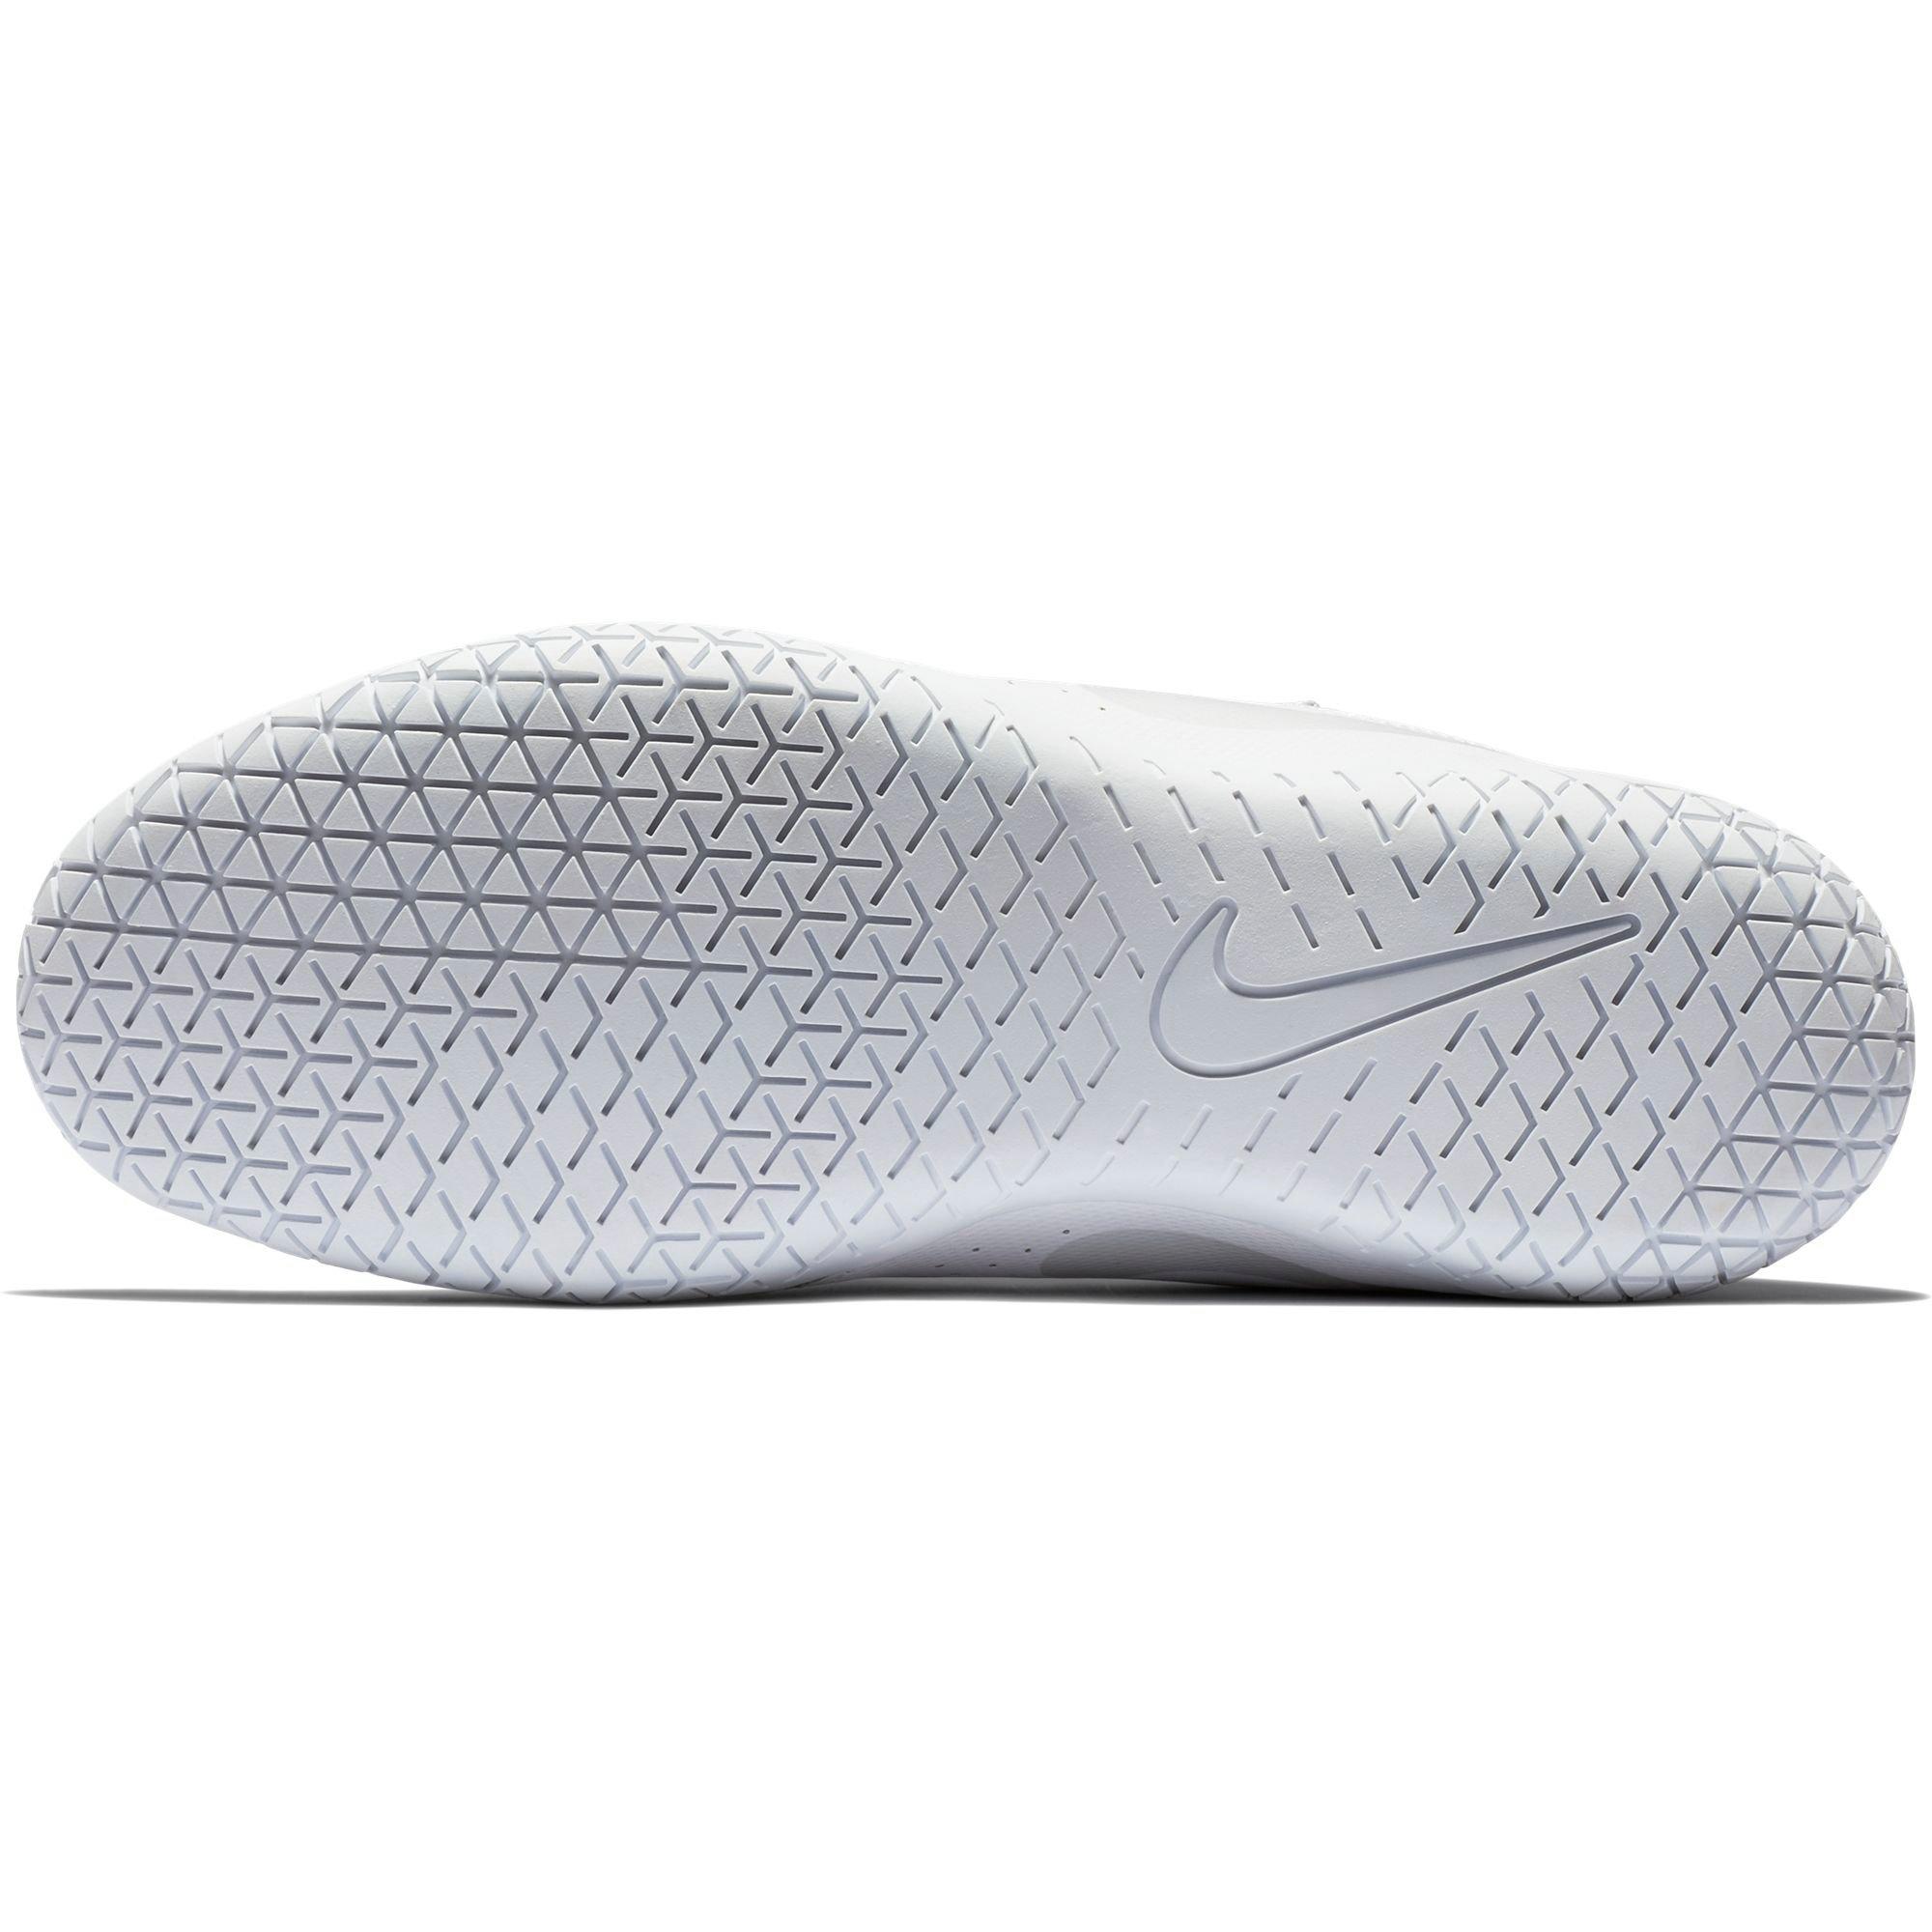 Nike Sideline IV "Platinum White" Women's Shoe